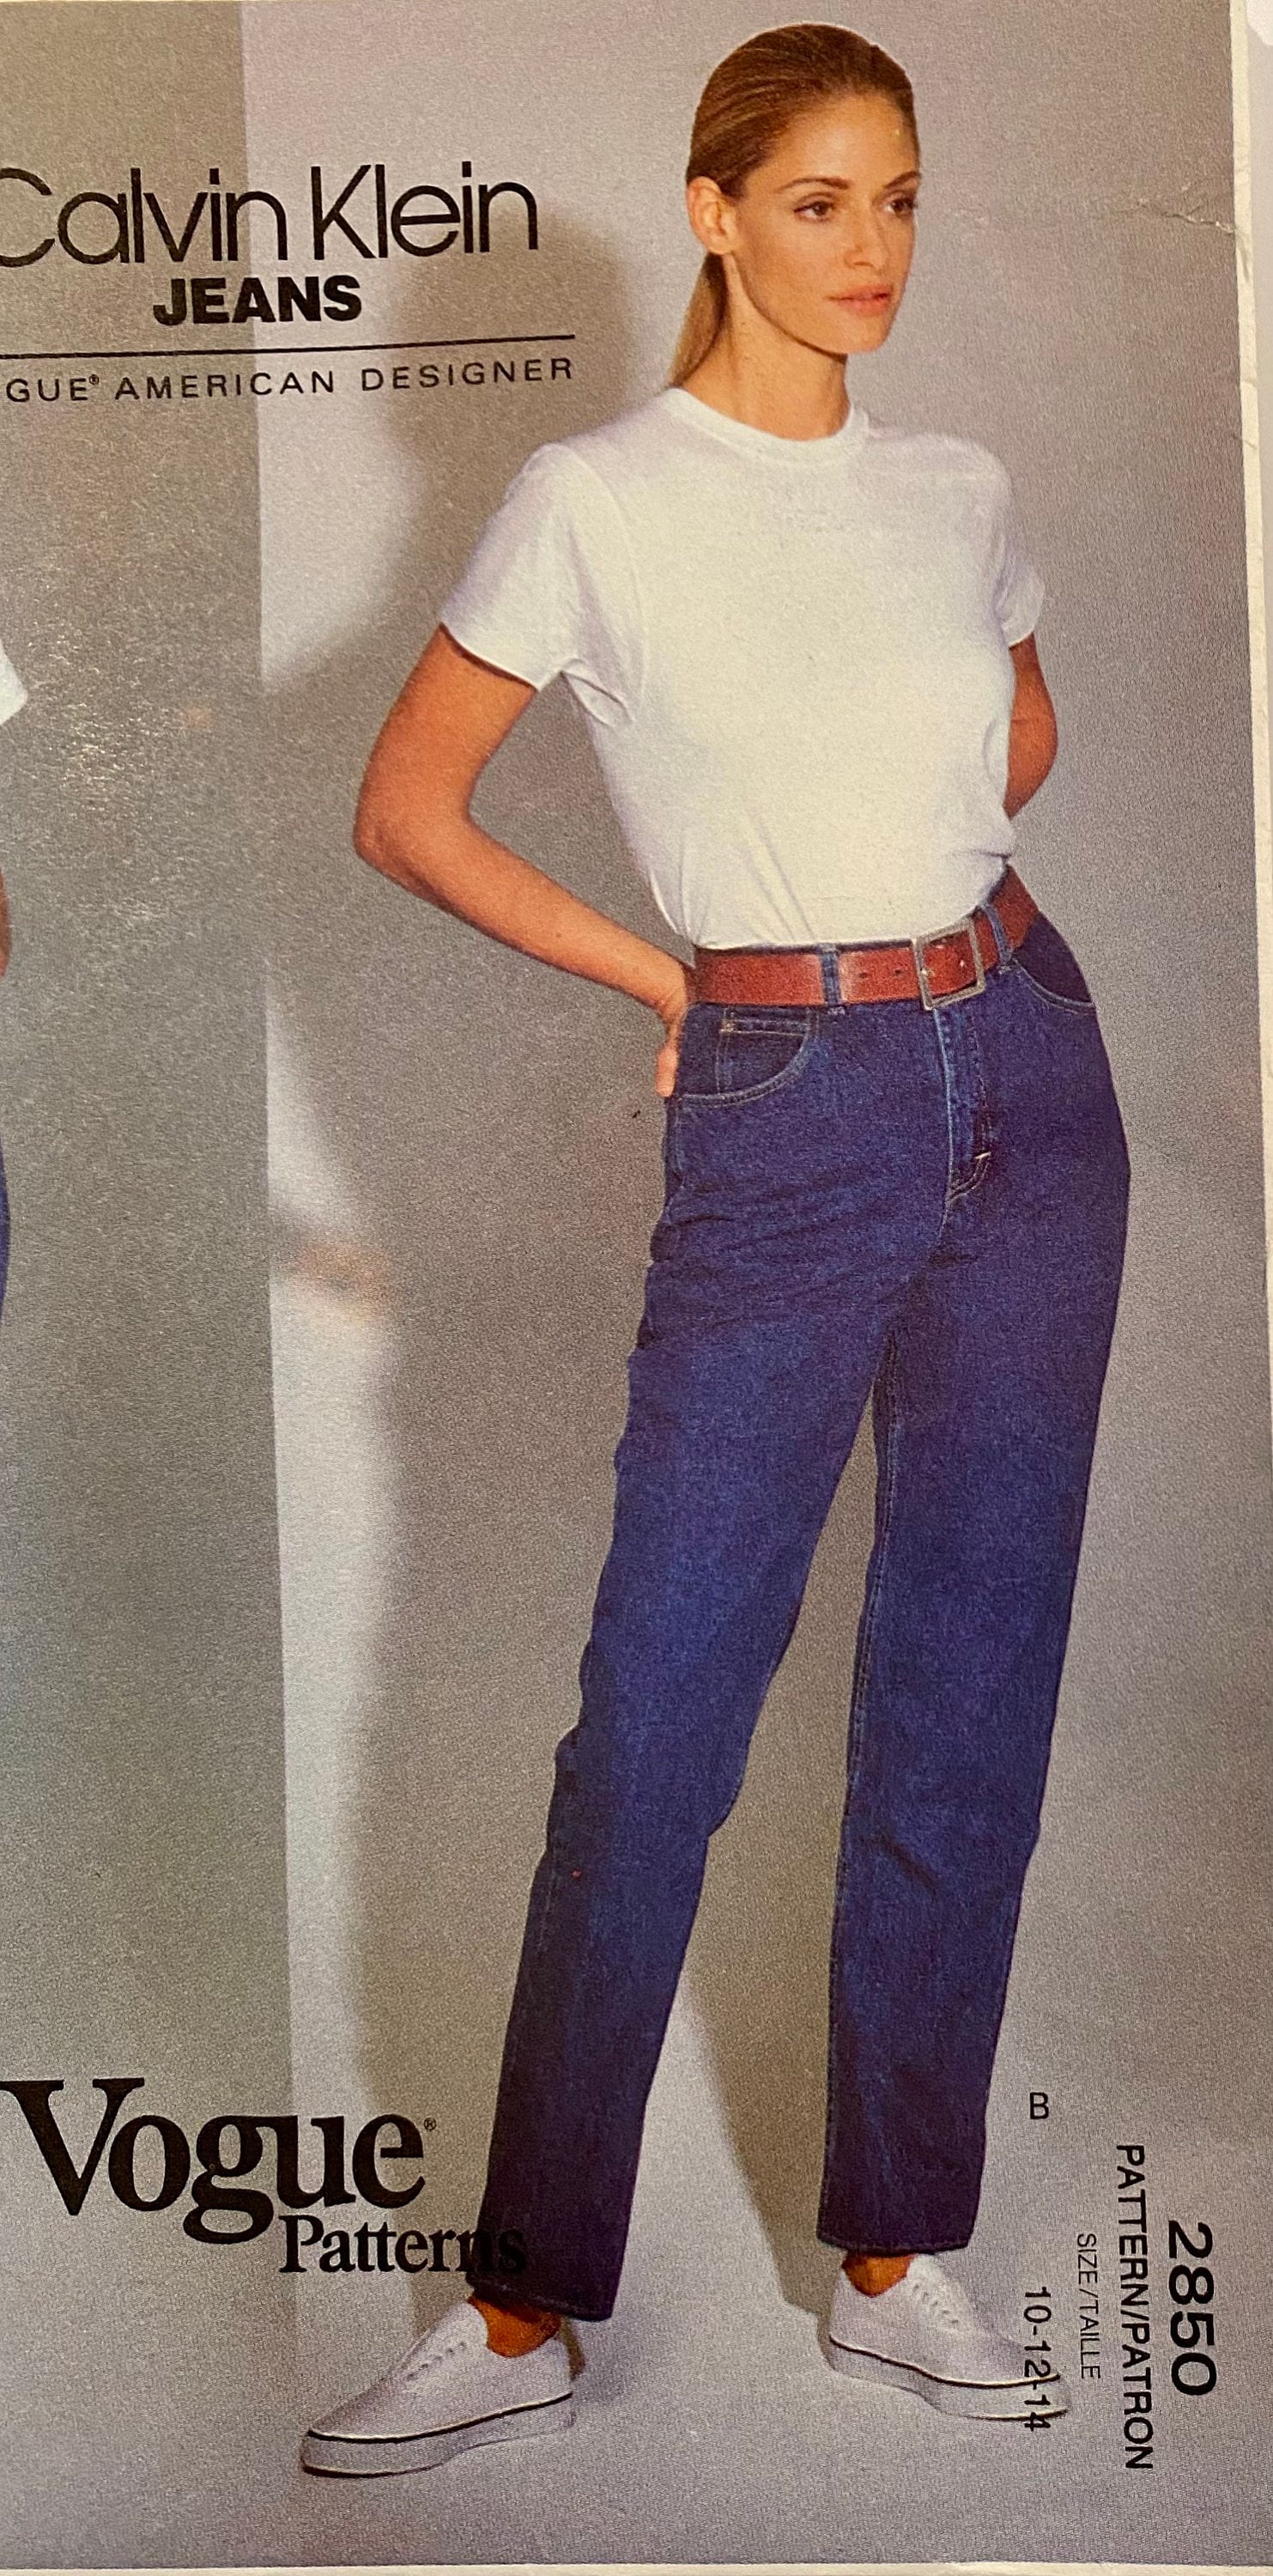 RARE Vintage Vogue Designer Calvin Klein Jeans & Skirt for a - Etsy